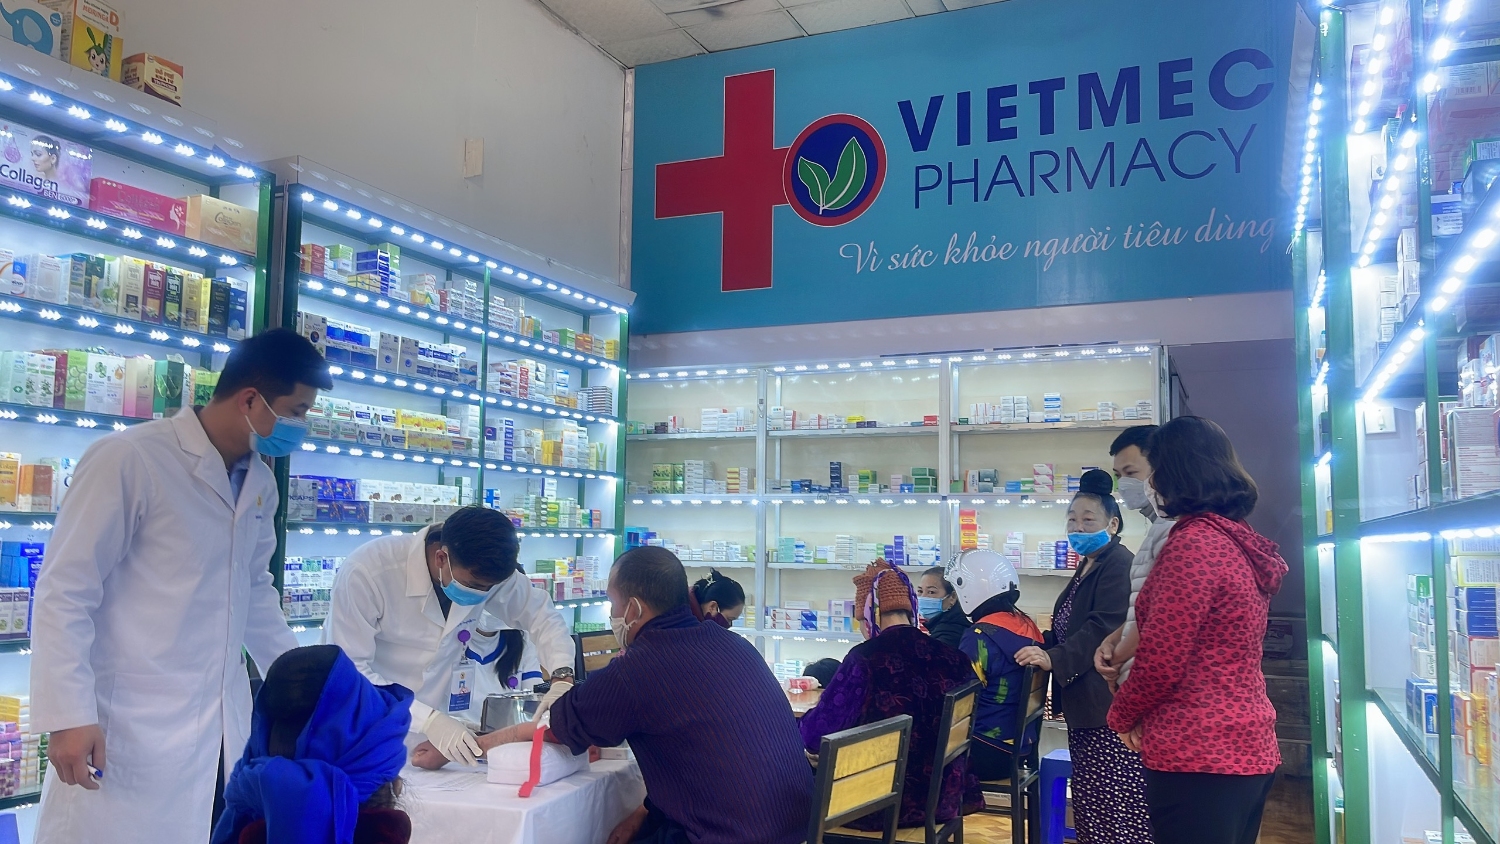 Tưng bừng khai trương nhà thuốc VIETMEC Pharmacy tại TP.Sơn La